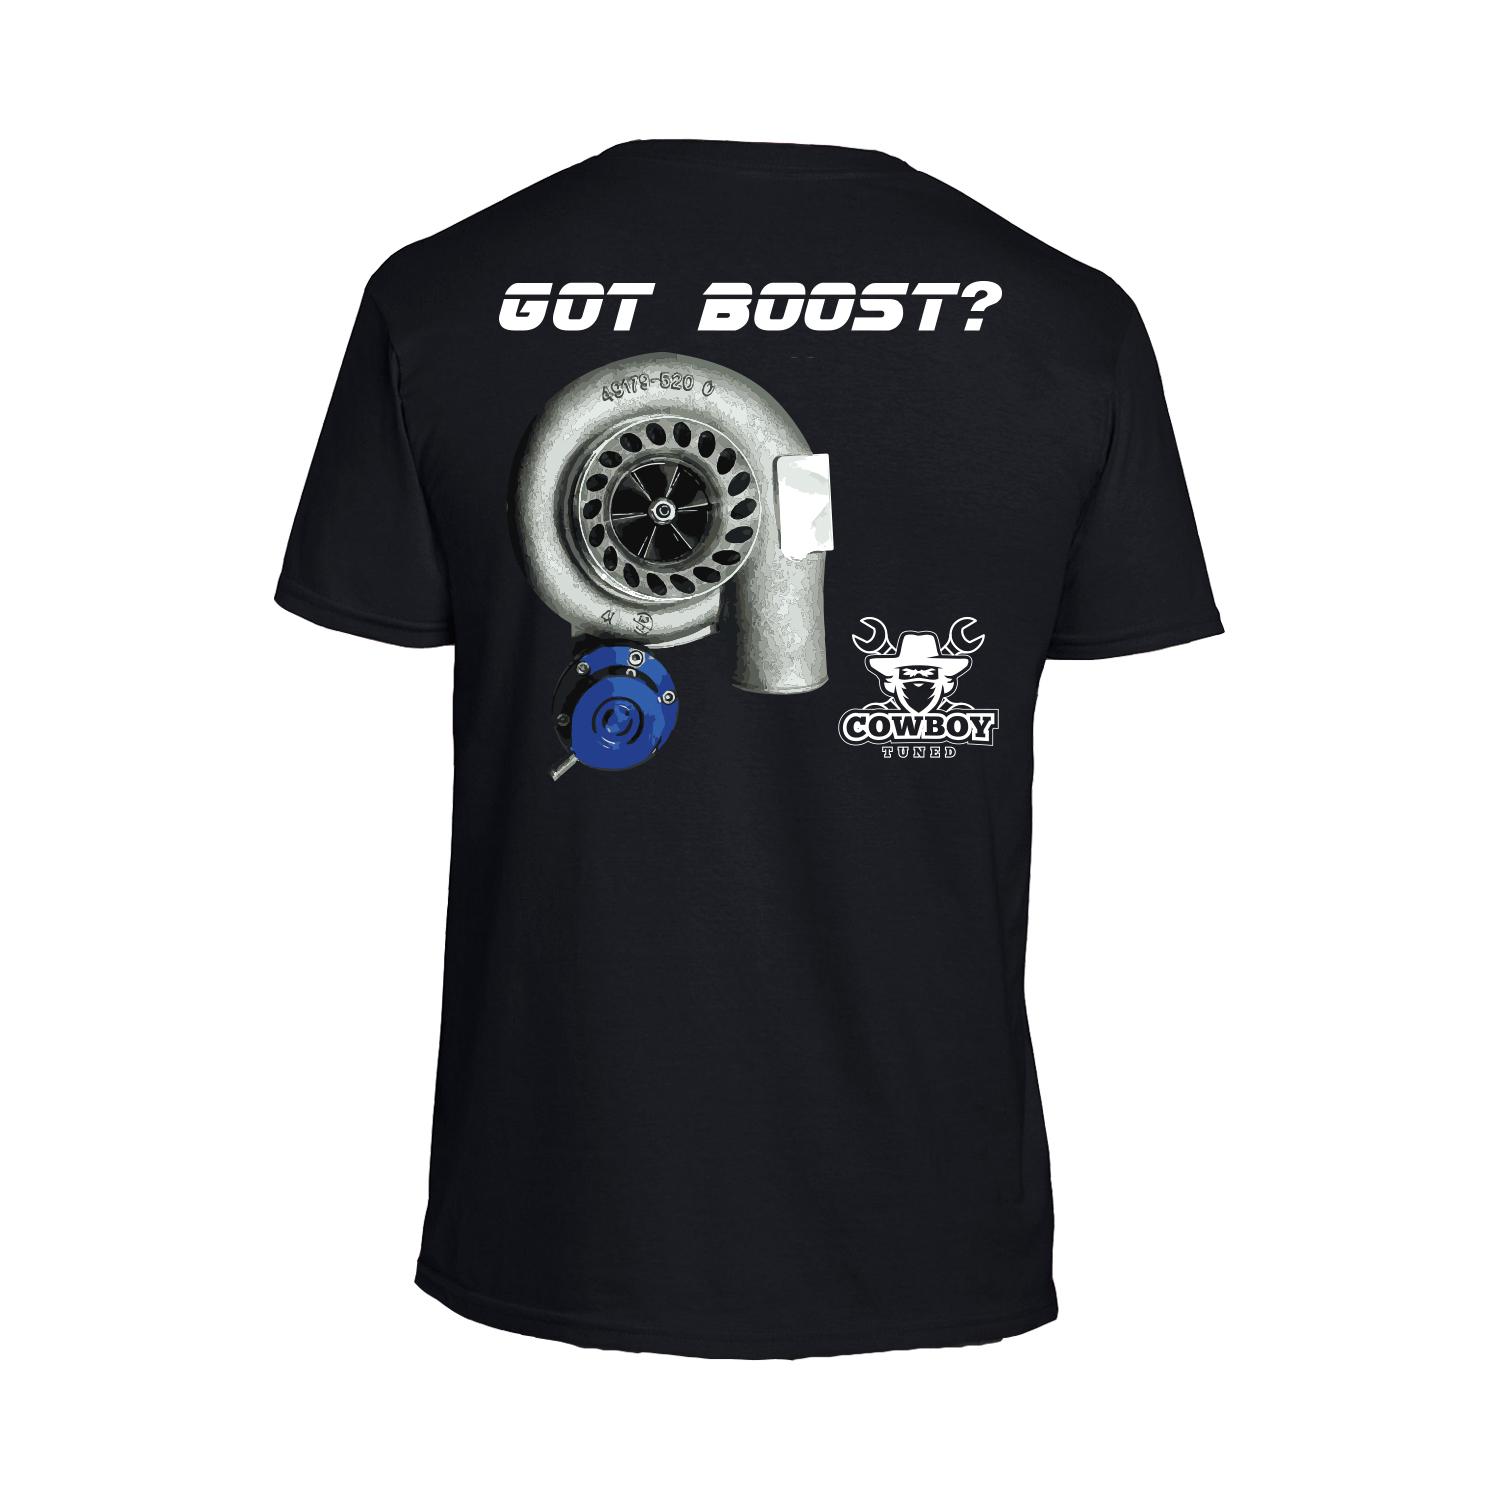 Got Boost Logo - Got Boost T-shirt - Cowboy Tuned